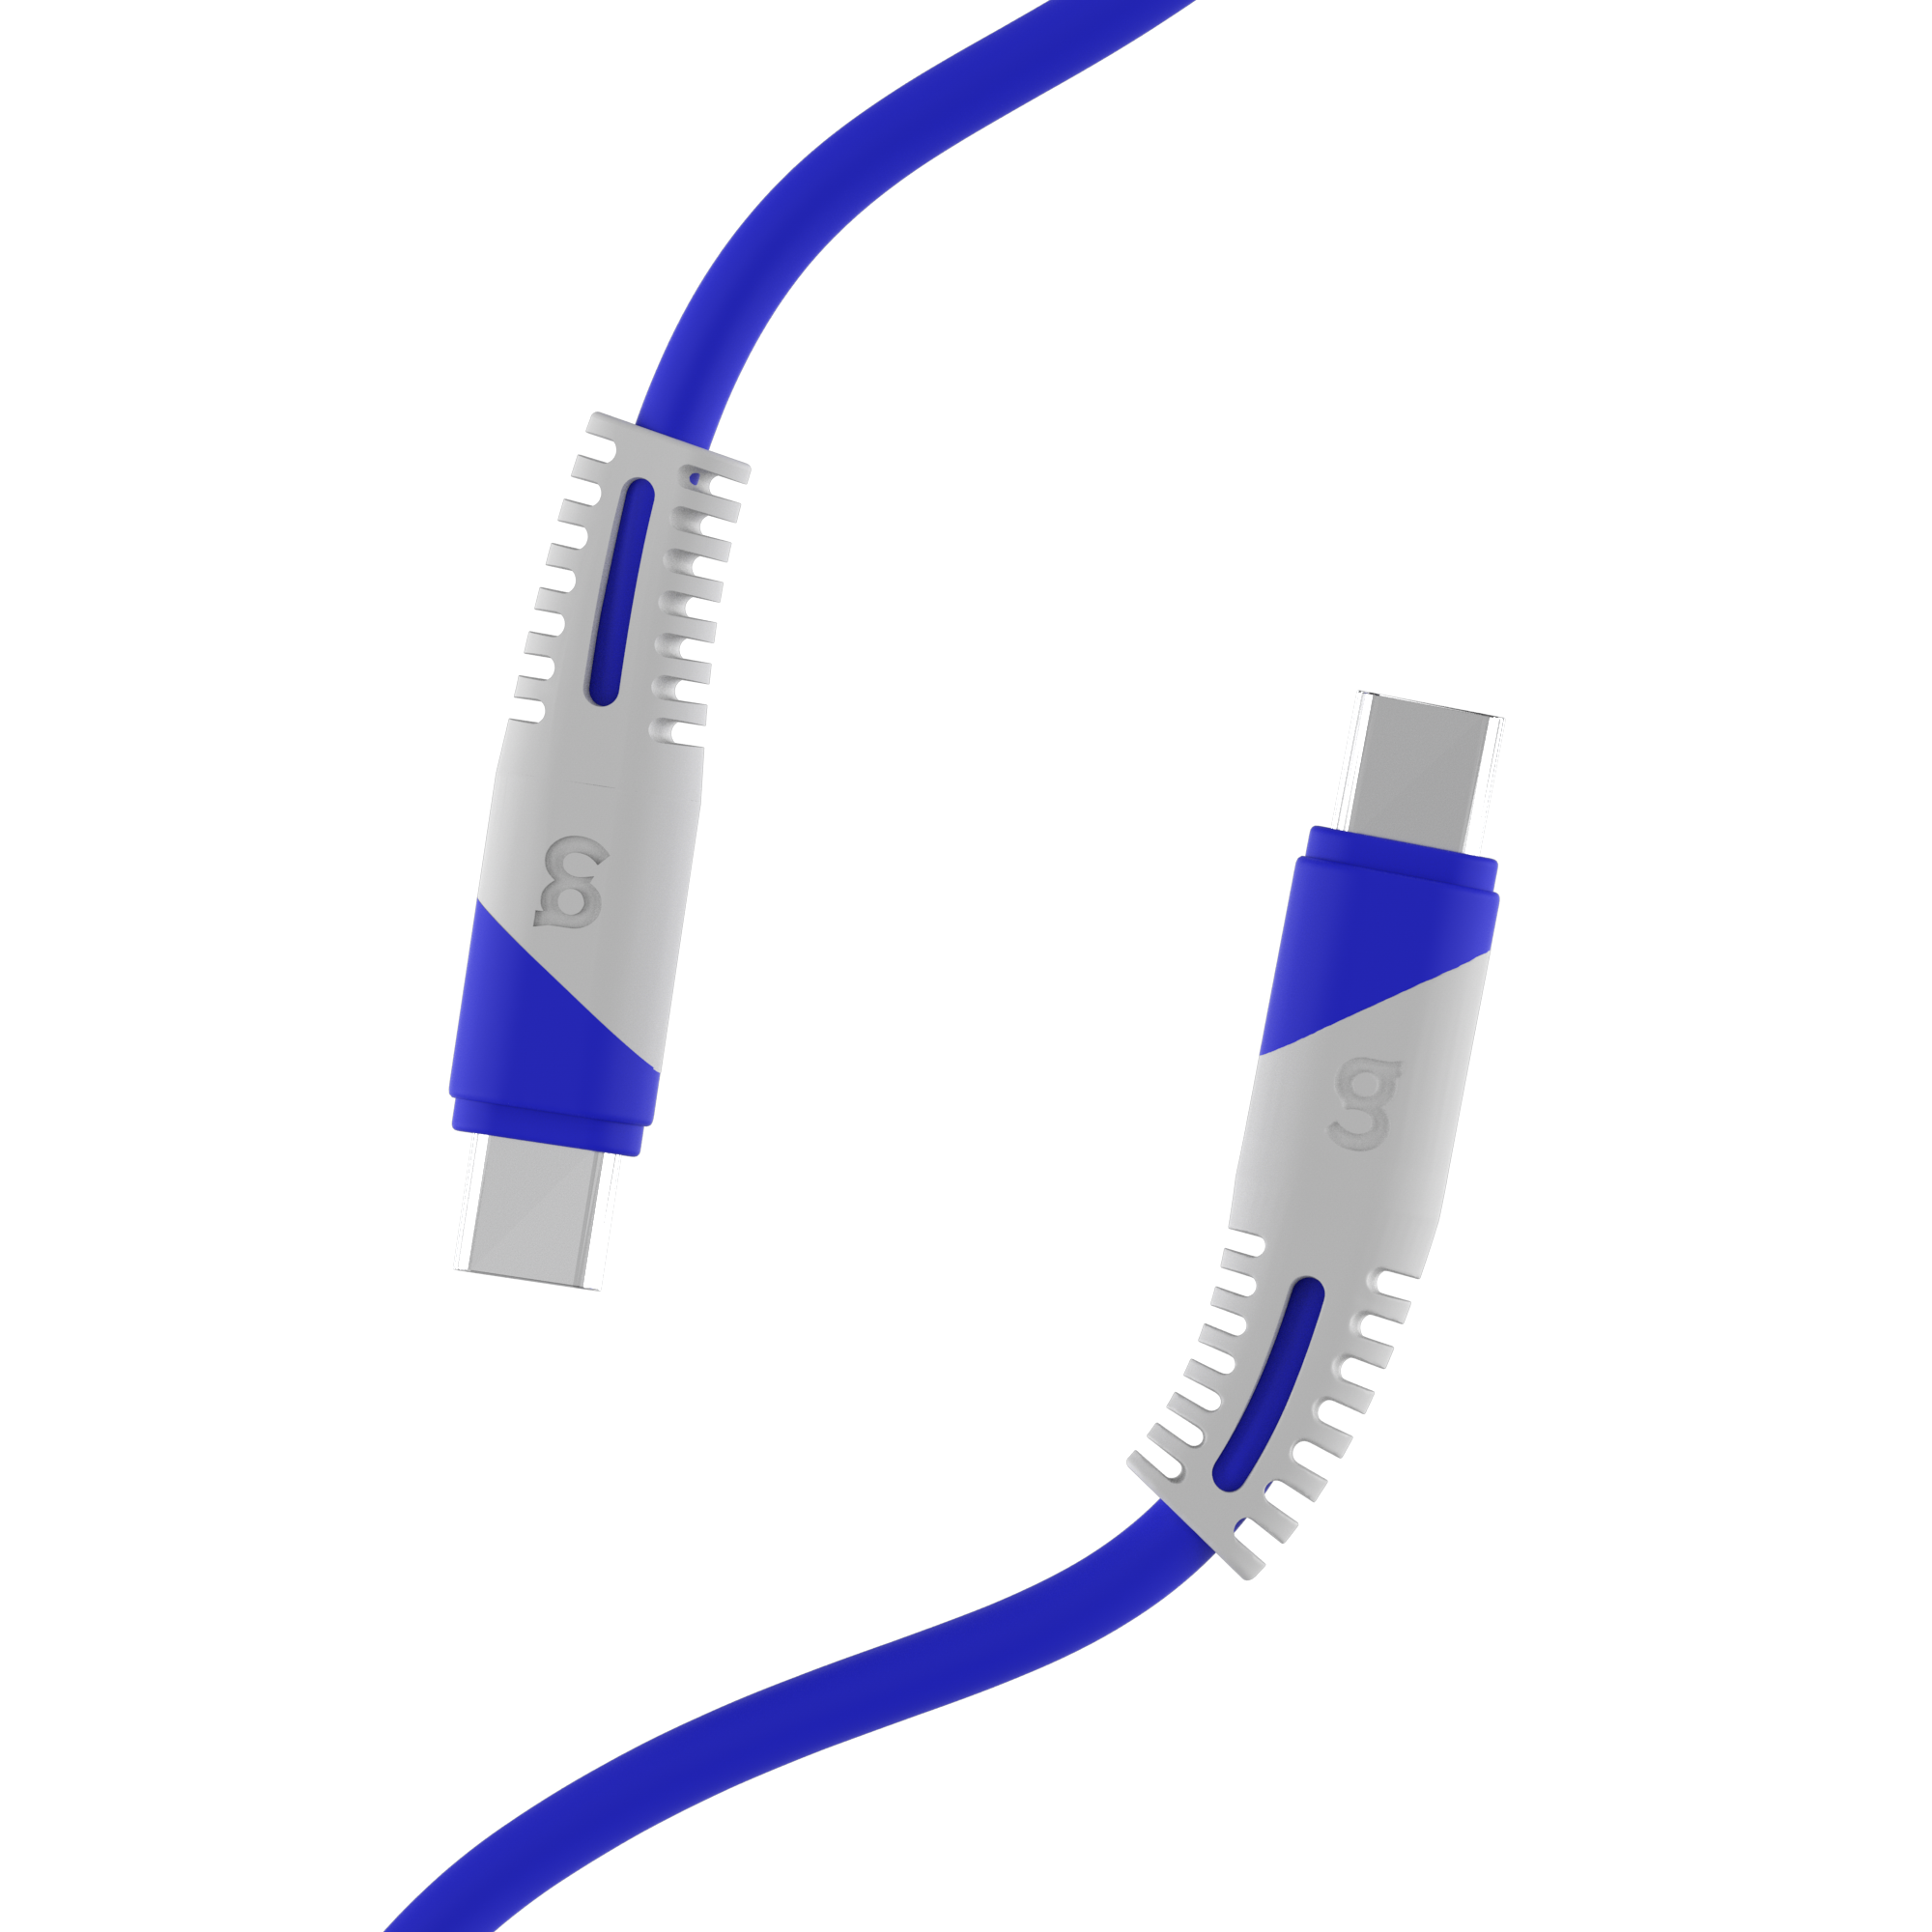 Cable de Carga Rápida Tekno USB-C a 8Pin - 3M - 962185